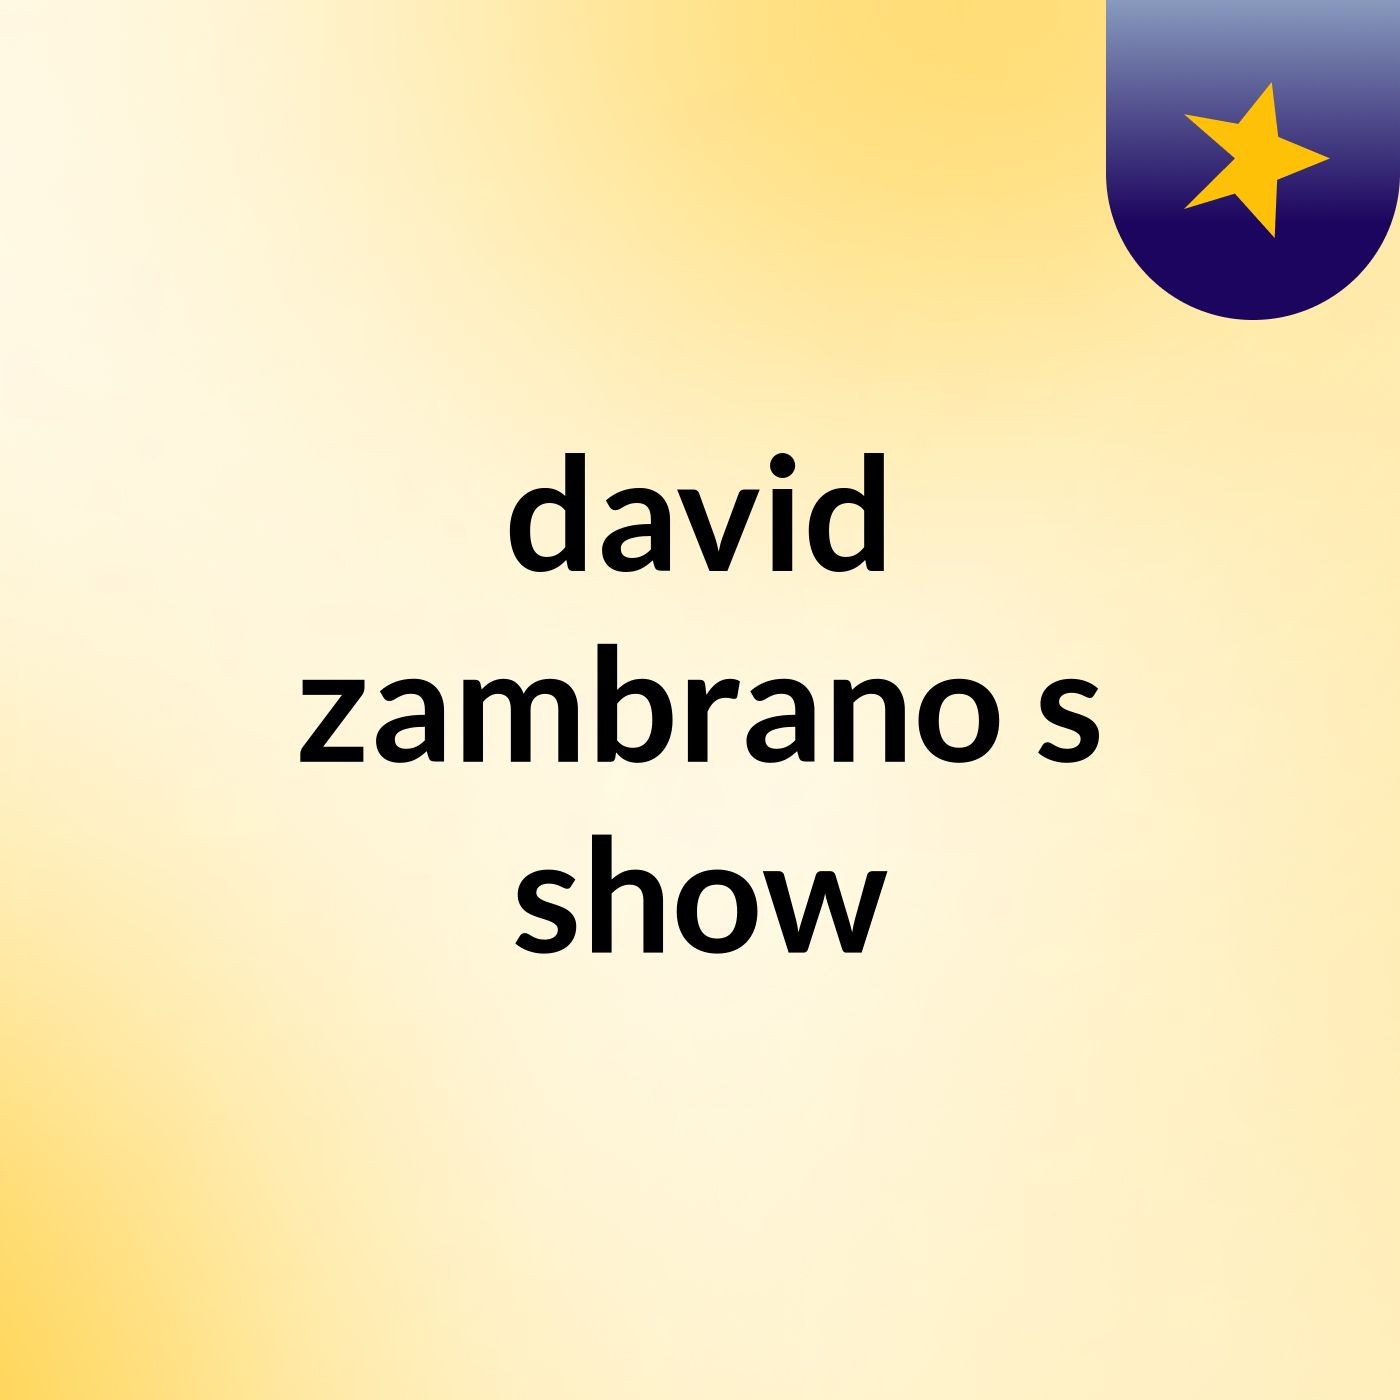 david zambrano's show